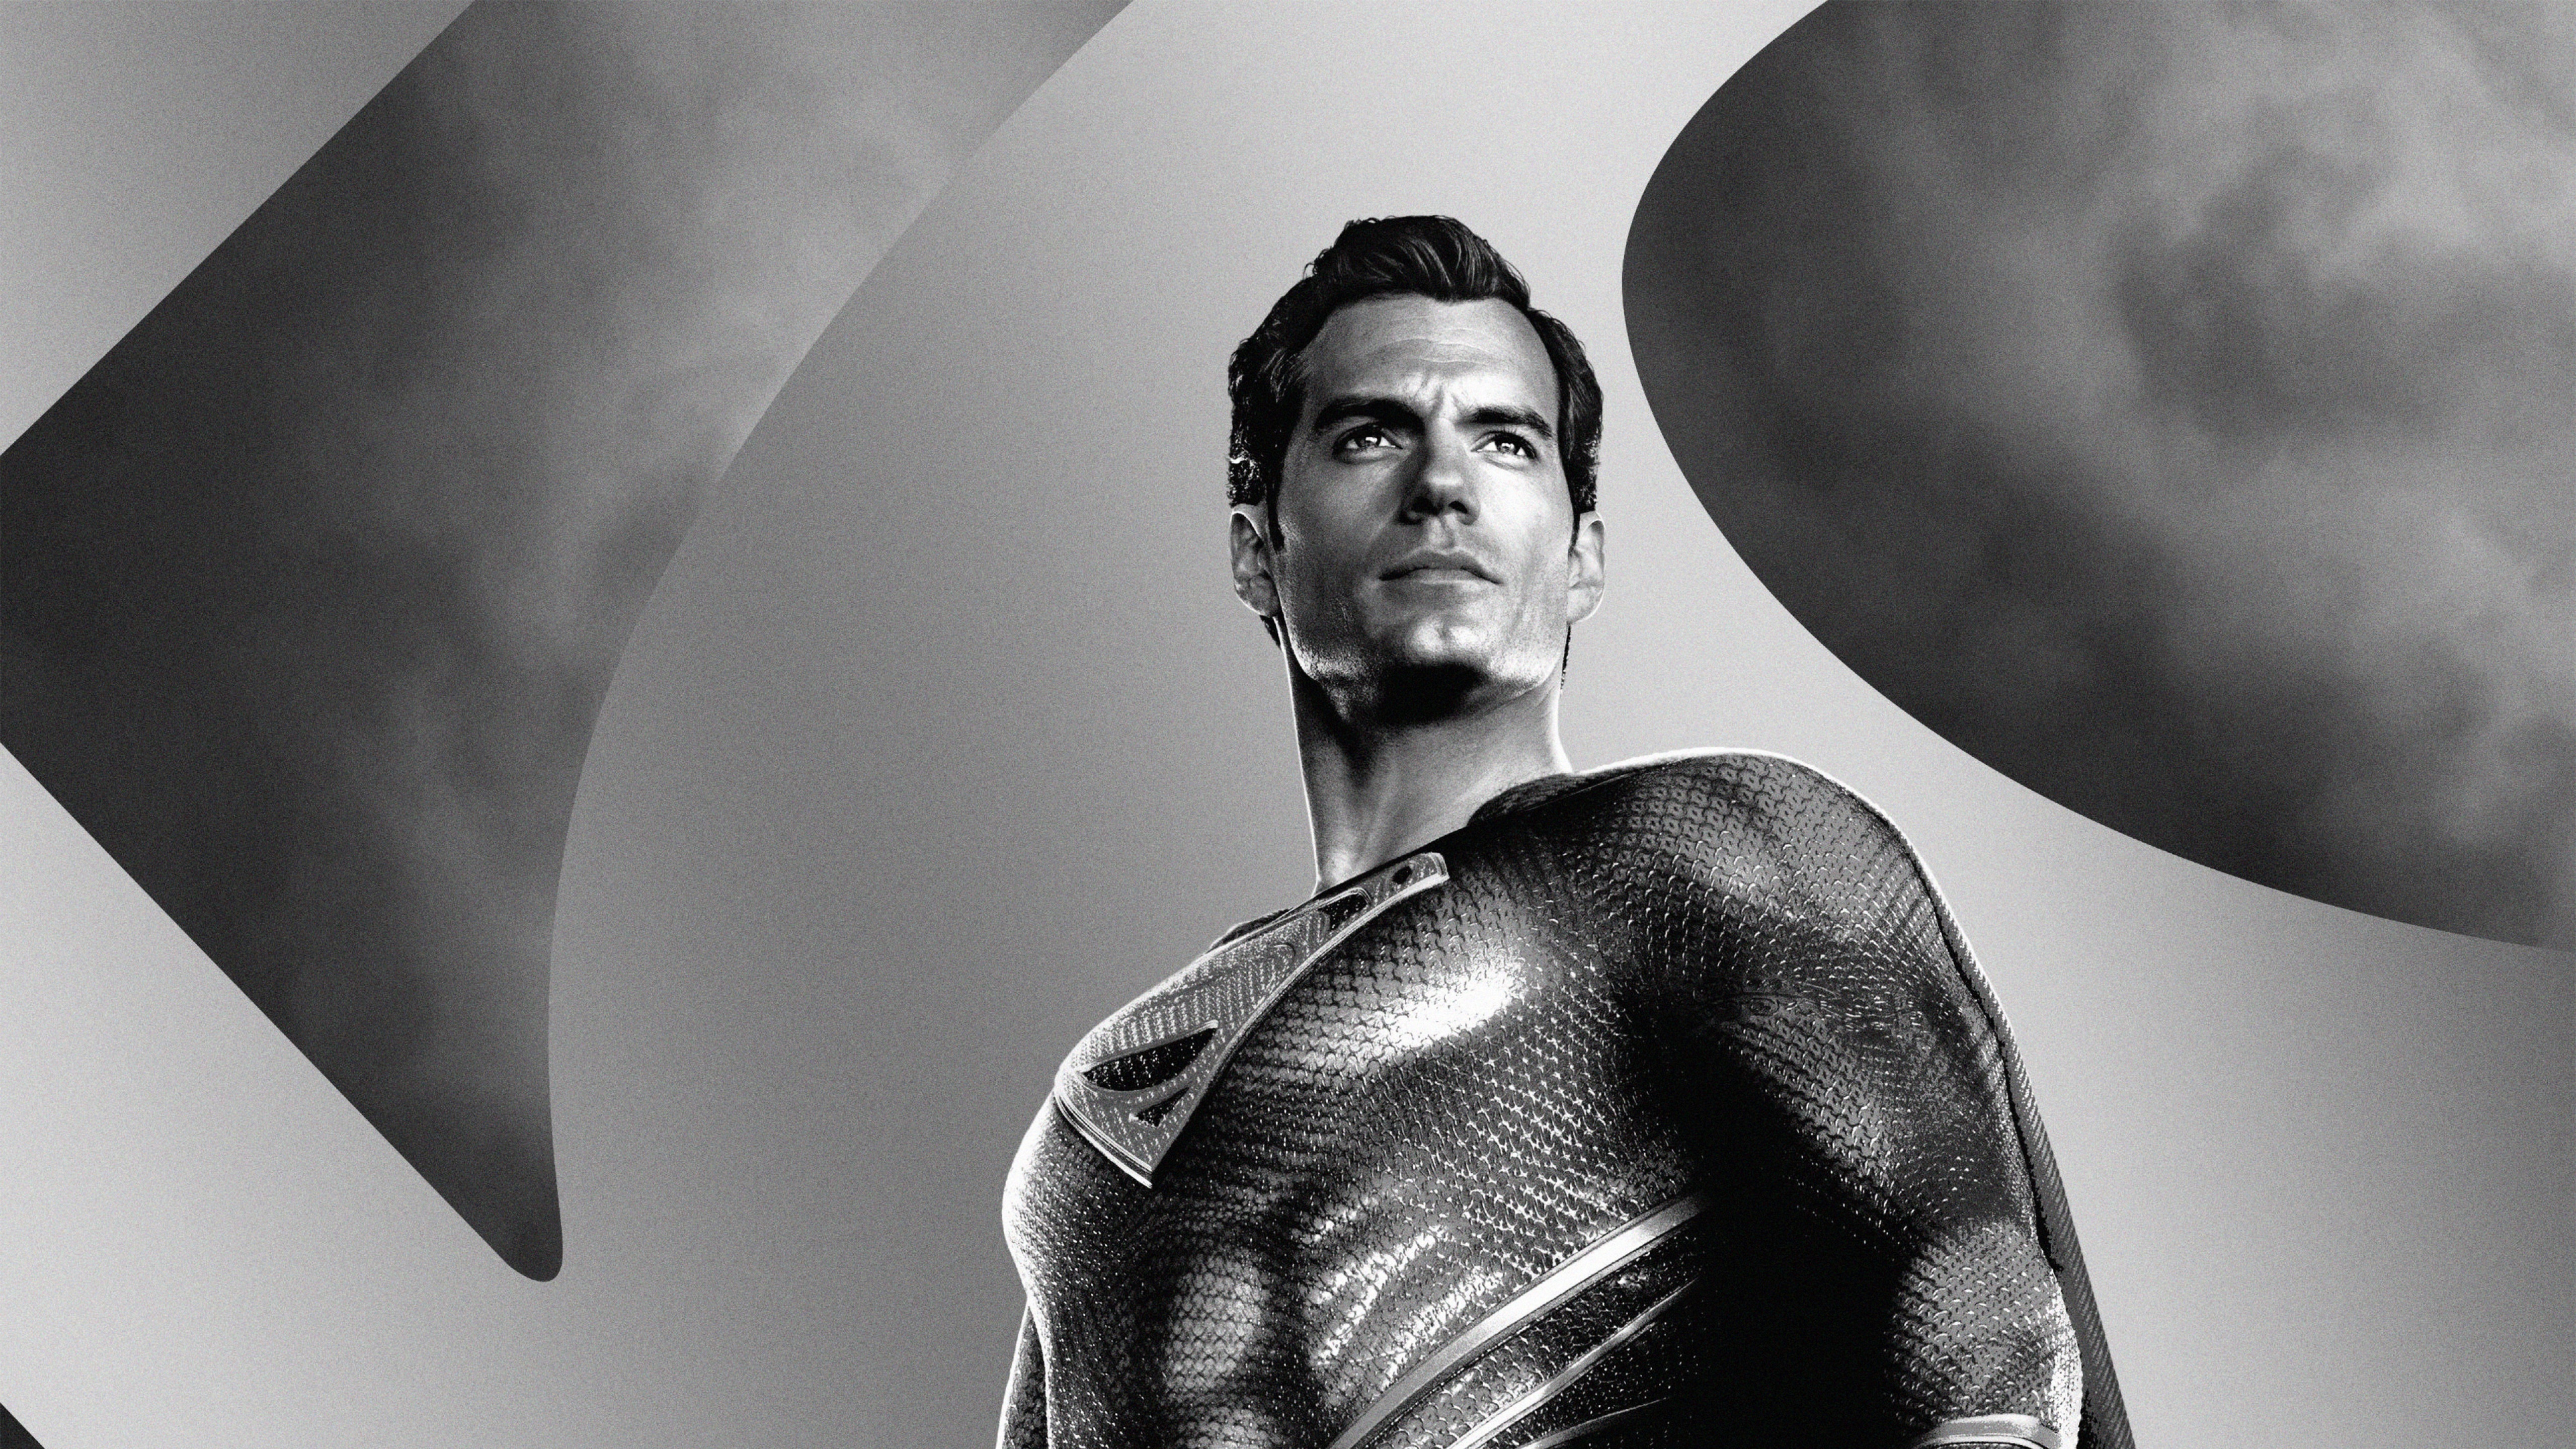 DC Comics Henry Cavill Superman 4K 5K HD Zack Snyder's Justice